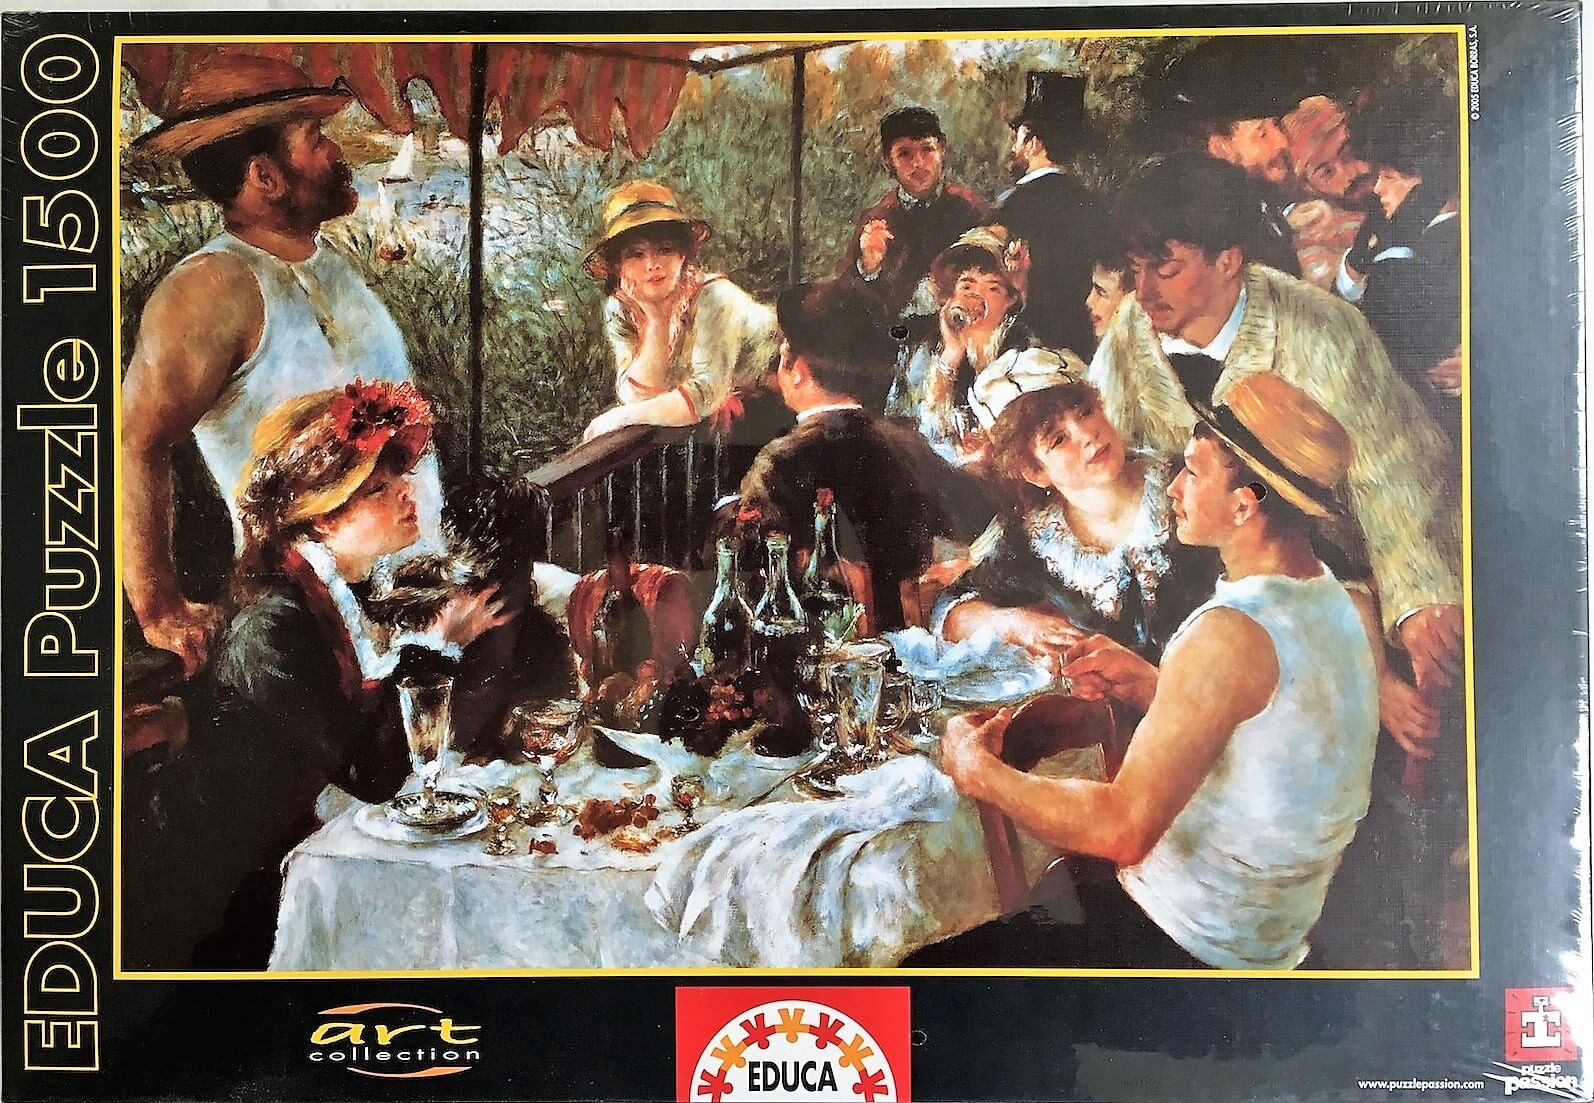 1500 Le Dejeuner Des Canotiers, Renoir